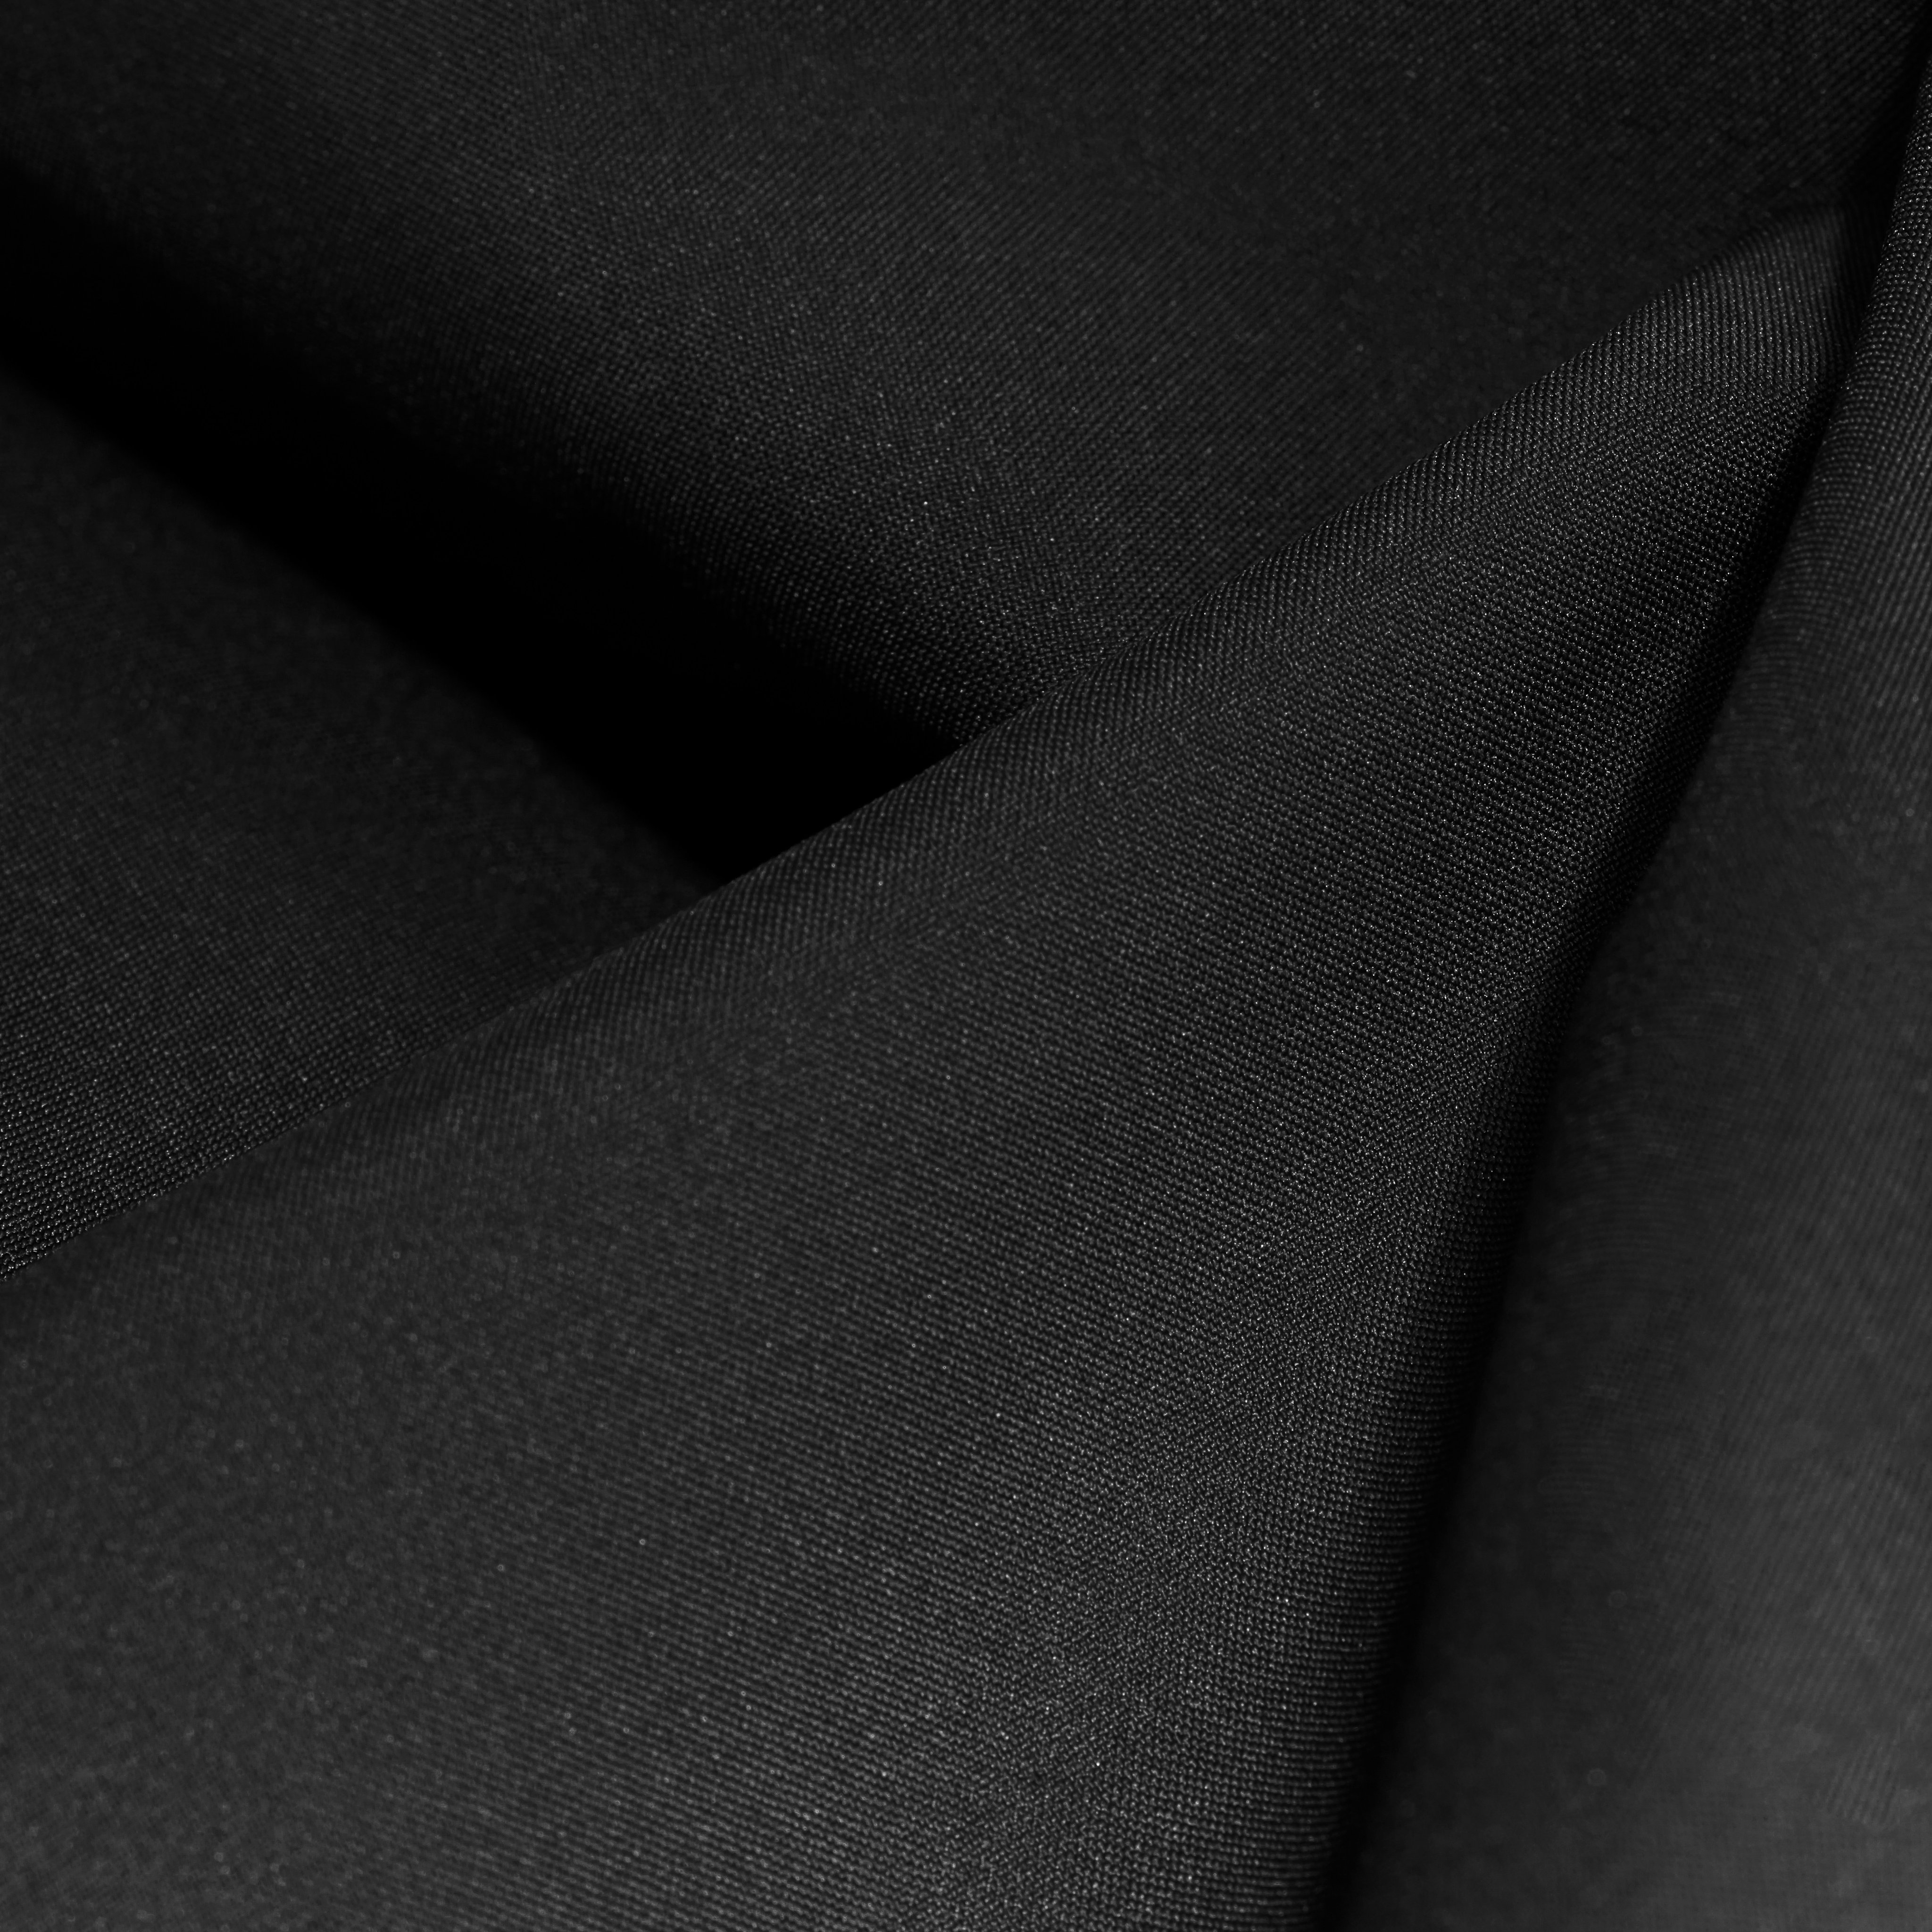 Albula HS Hooded Jacket Men product image